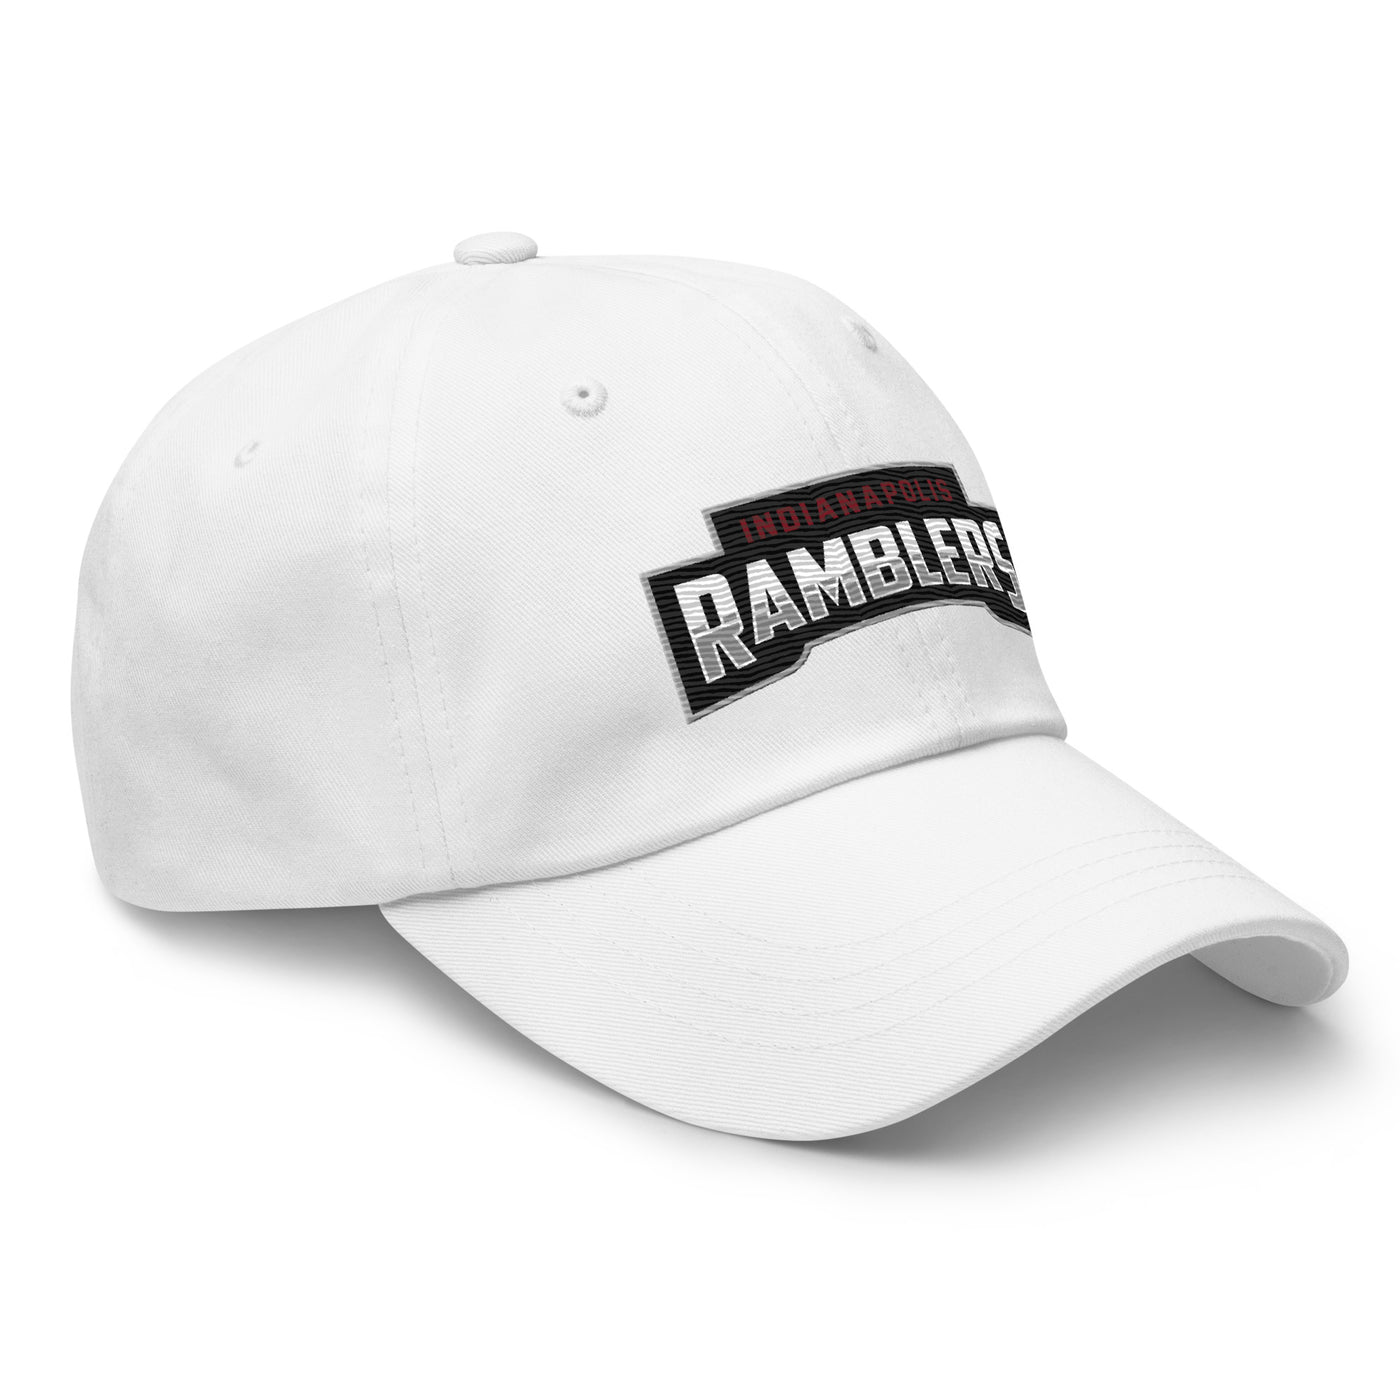 Indianapolis Ramblers Dad hat